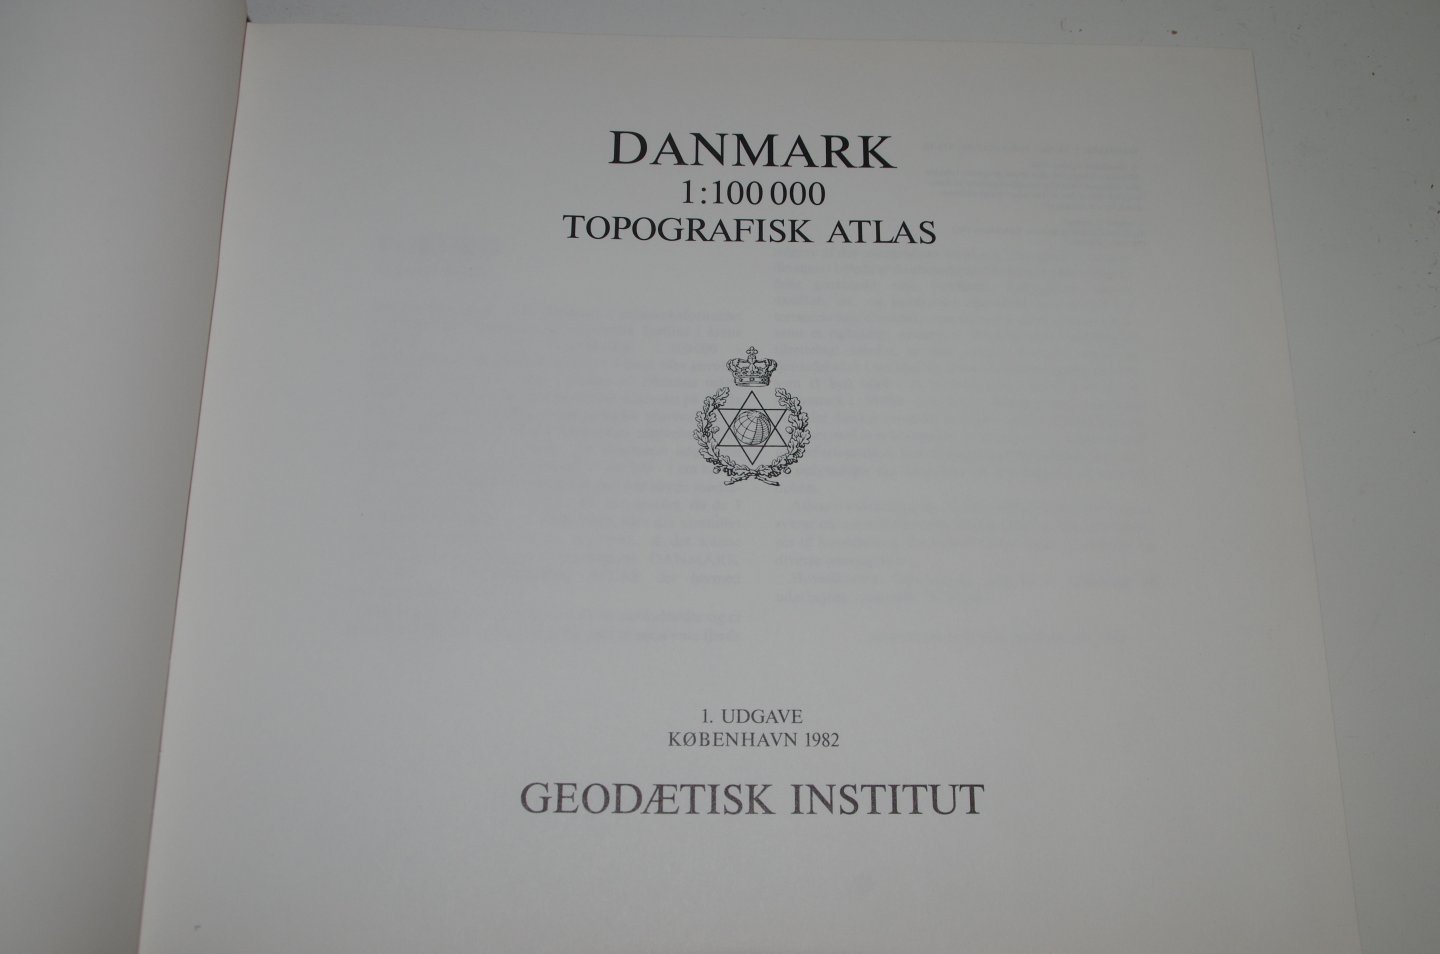  - Danmark Topografisk Atlas 1:100.000